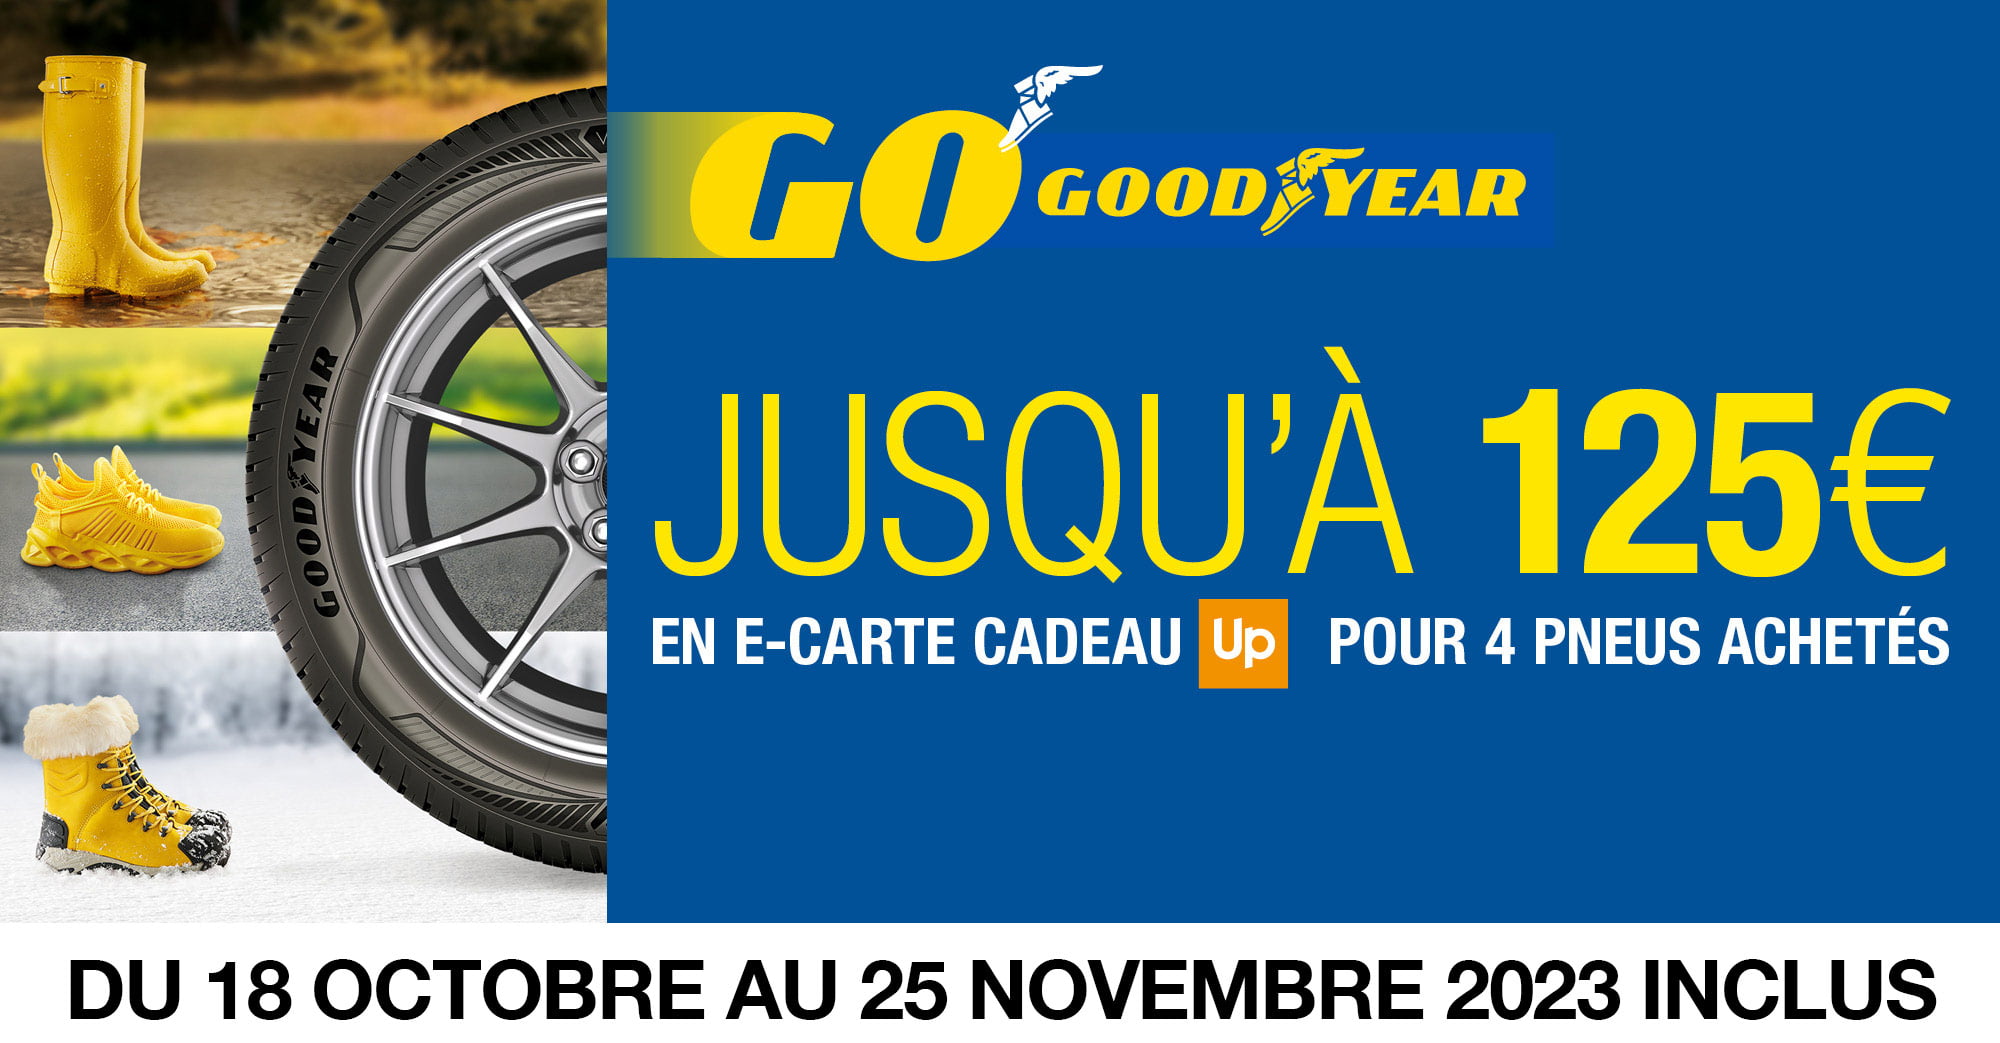 Jusqu'à 125 euros en carte cadeau Up pour 4 pneus Goodyear achetés